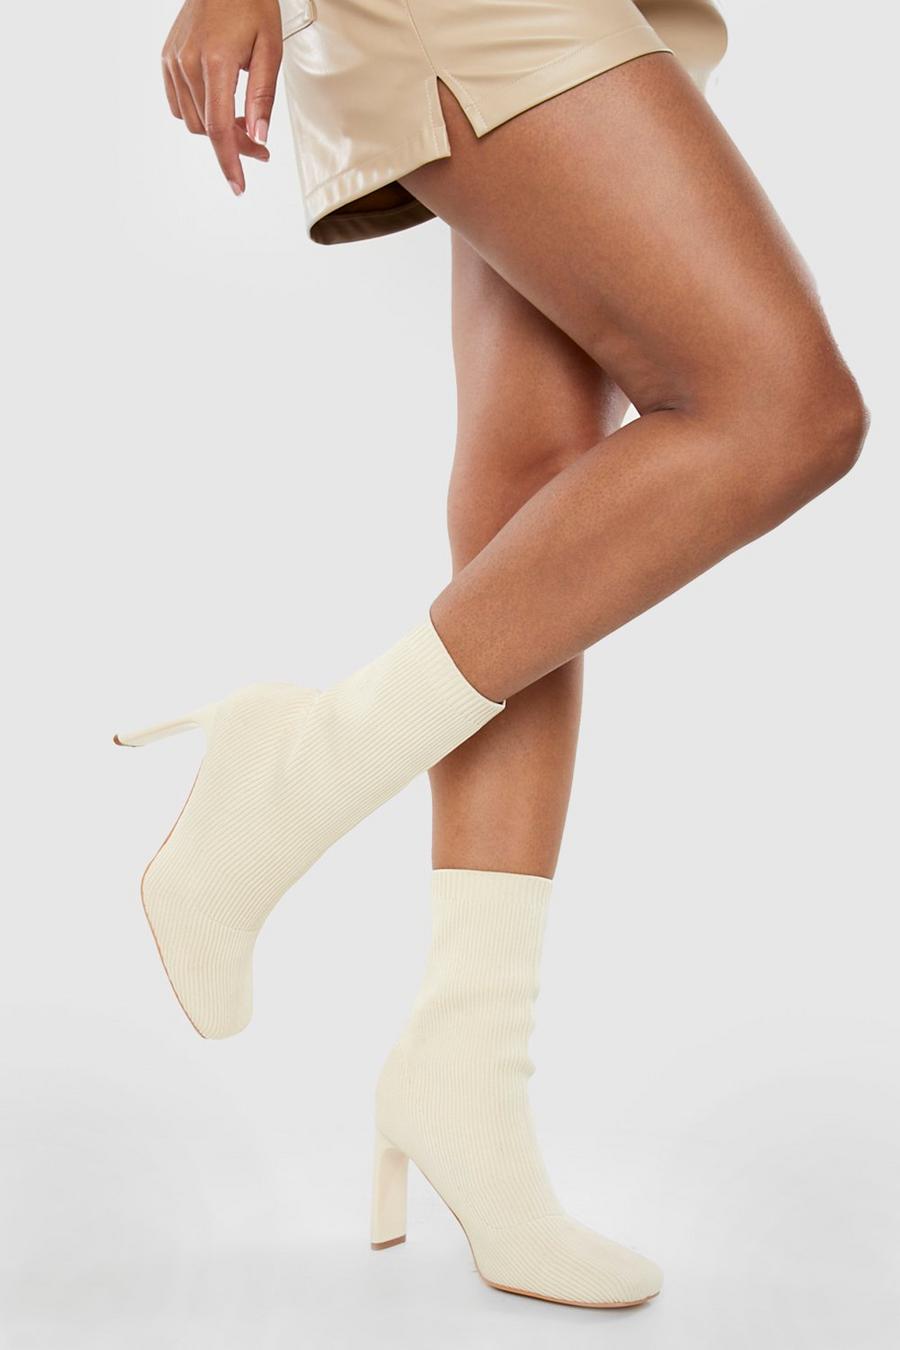 Botas calcetín de holgura ancha tela con puntera cuadrada, Cream blanco